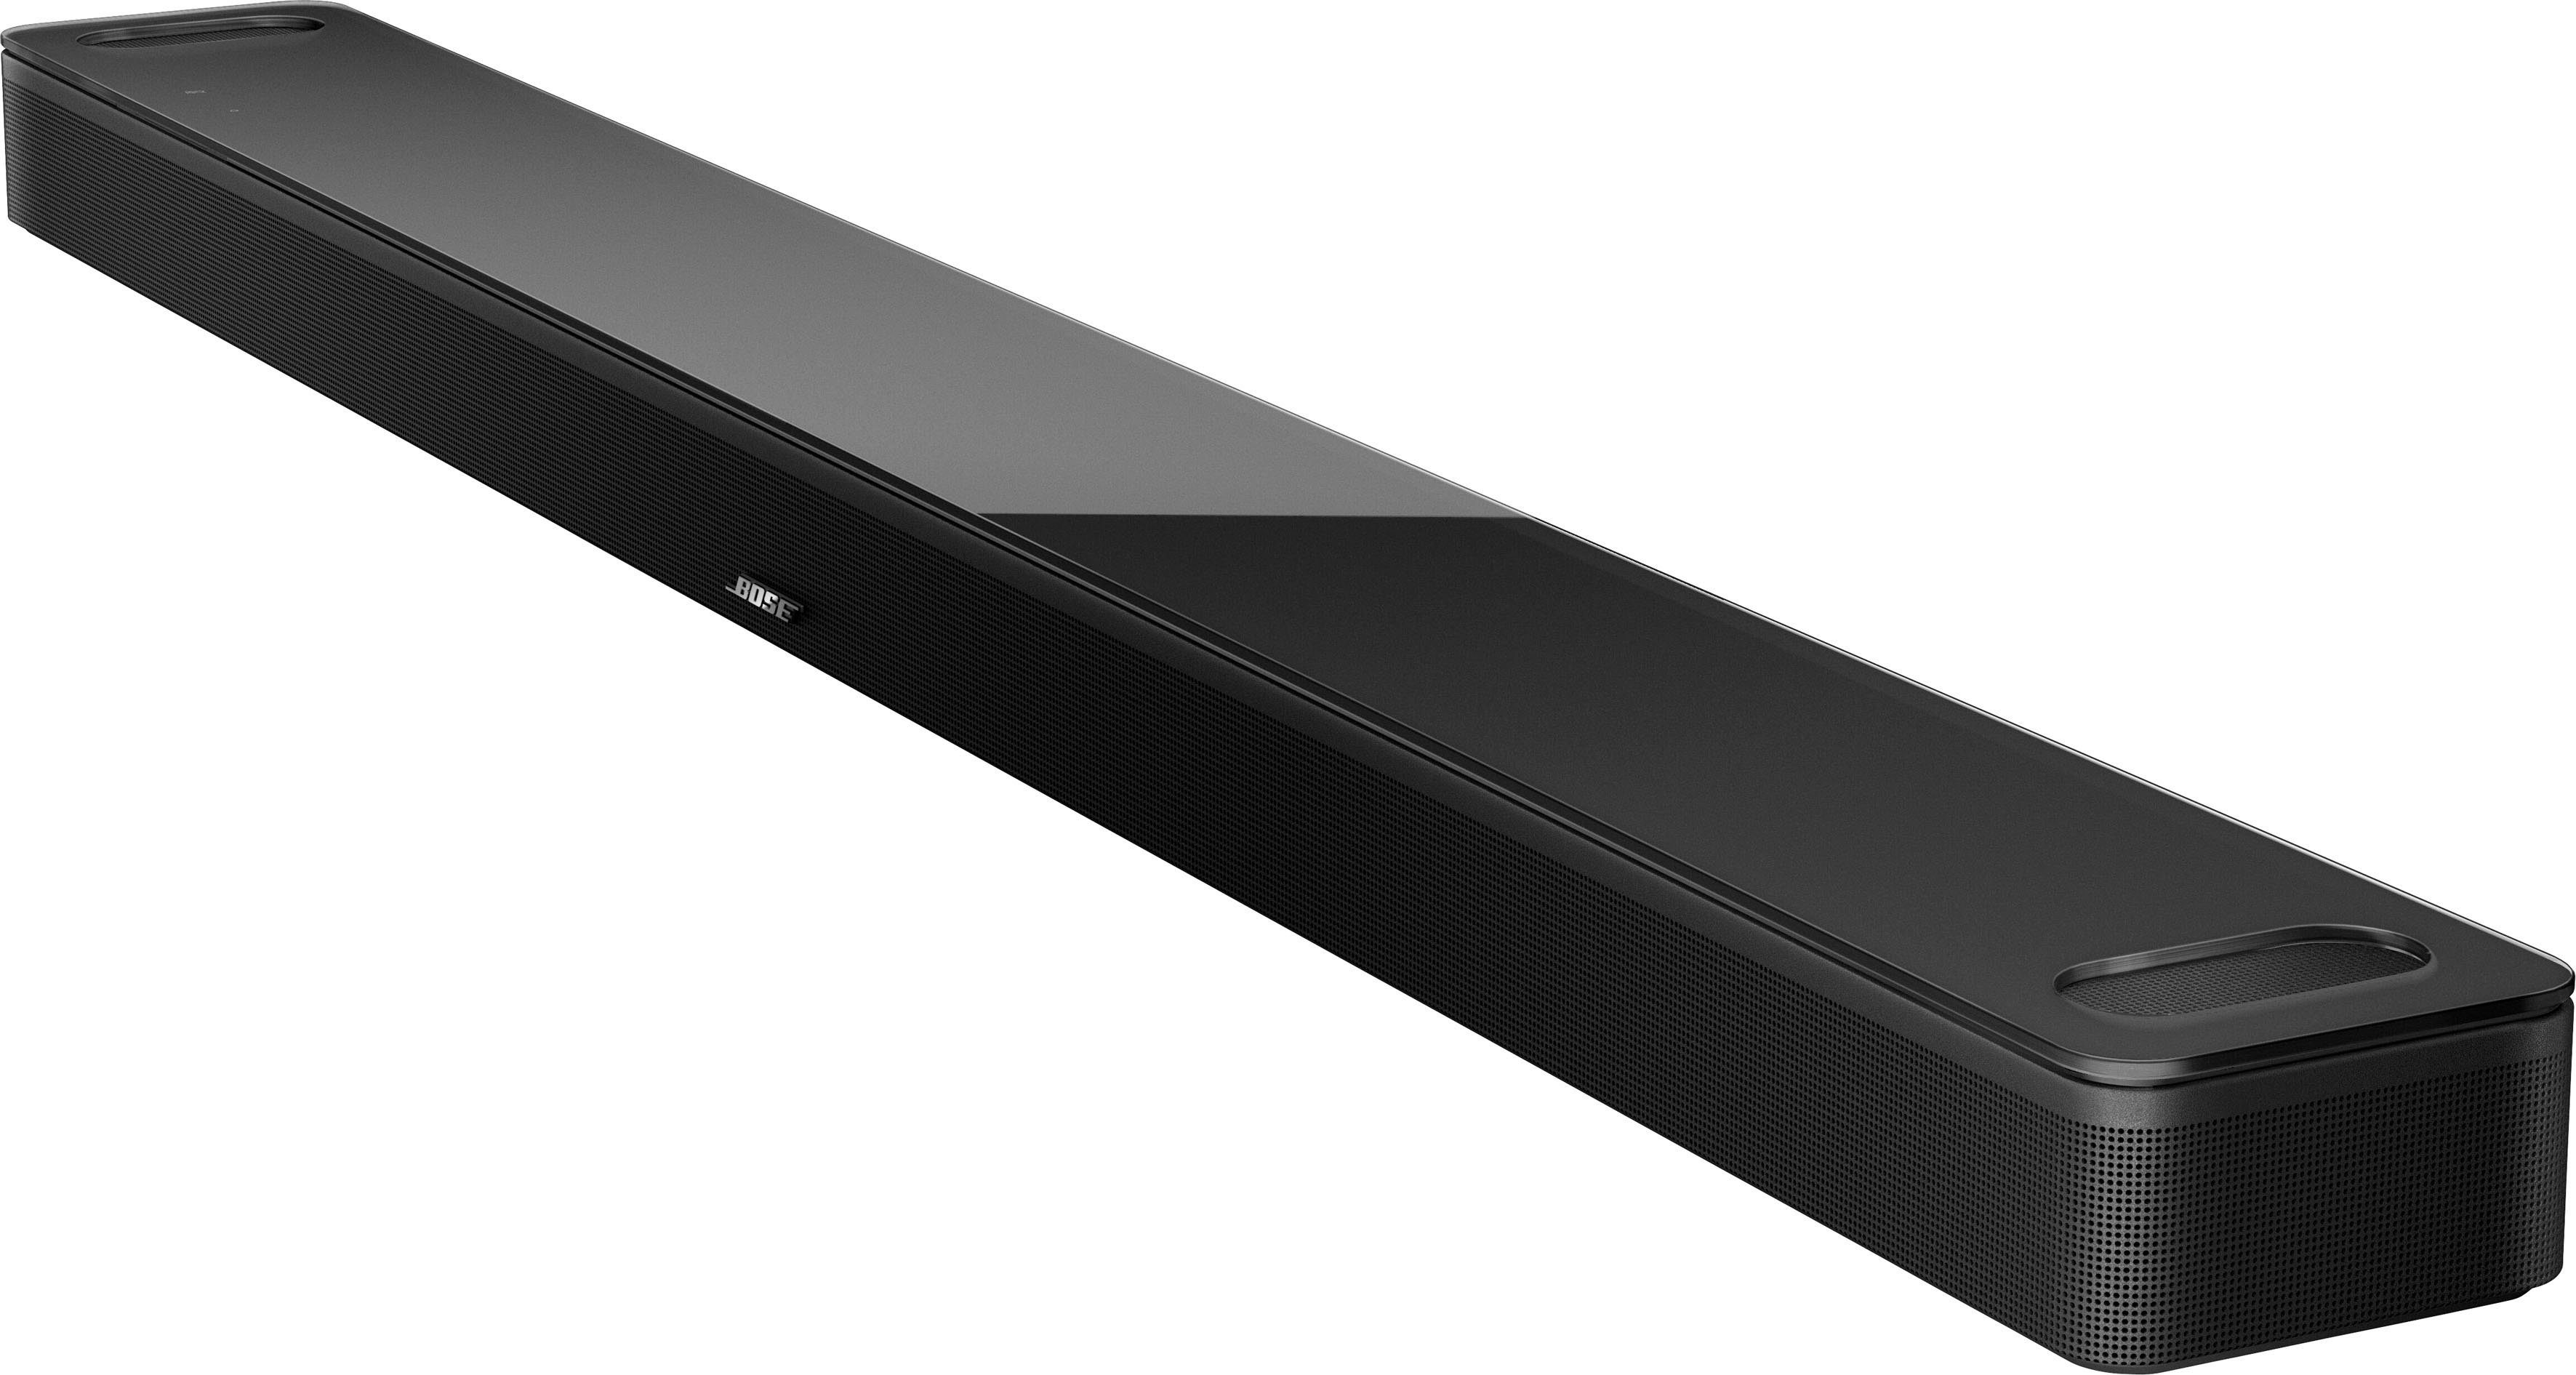 Soundbar schwarz Bose Soundbar und LAN Assistant) mit Smart Alexa Google (Bluetooth, Amazon (Ethernet), 900